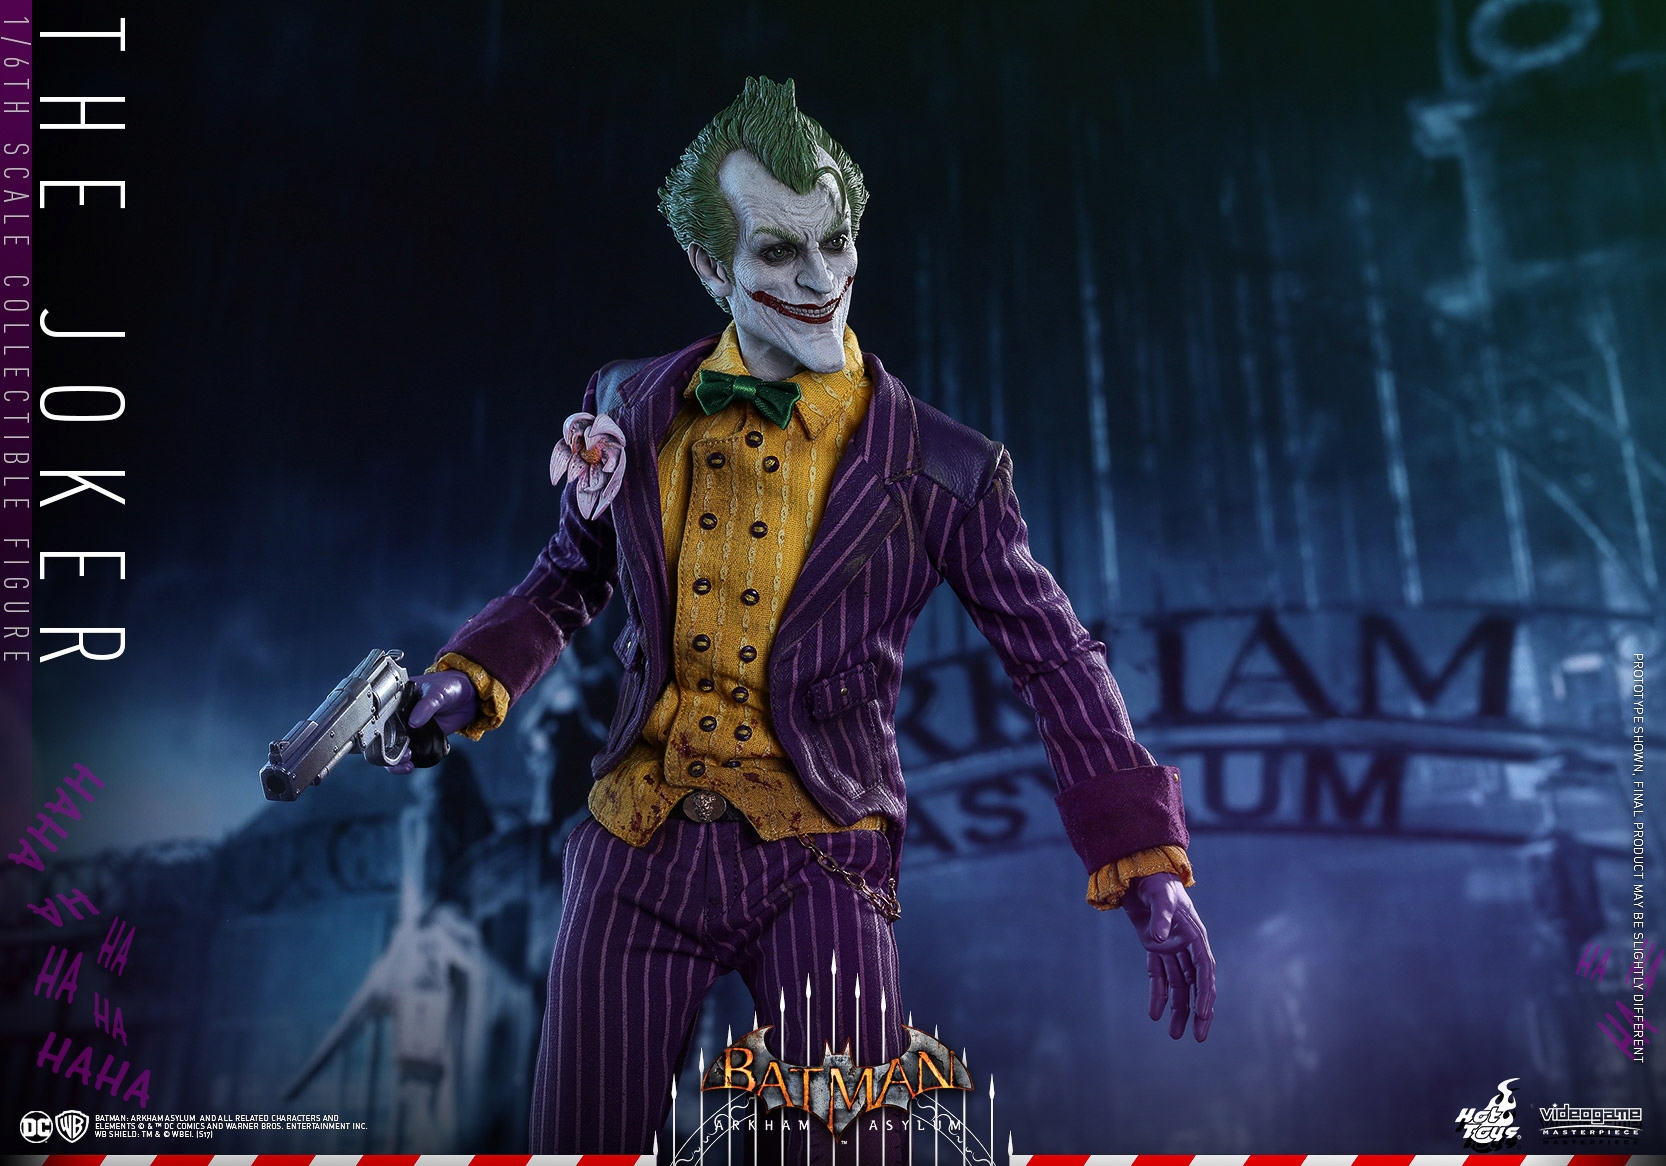 Hot-Toys-Batman-Arkham-Asylum-Joker-Collectible-Figure-006.jpg